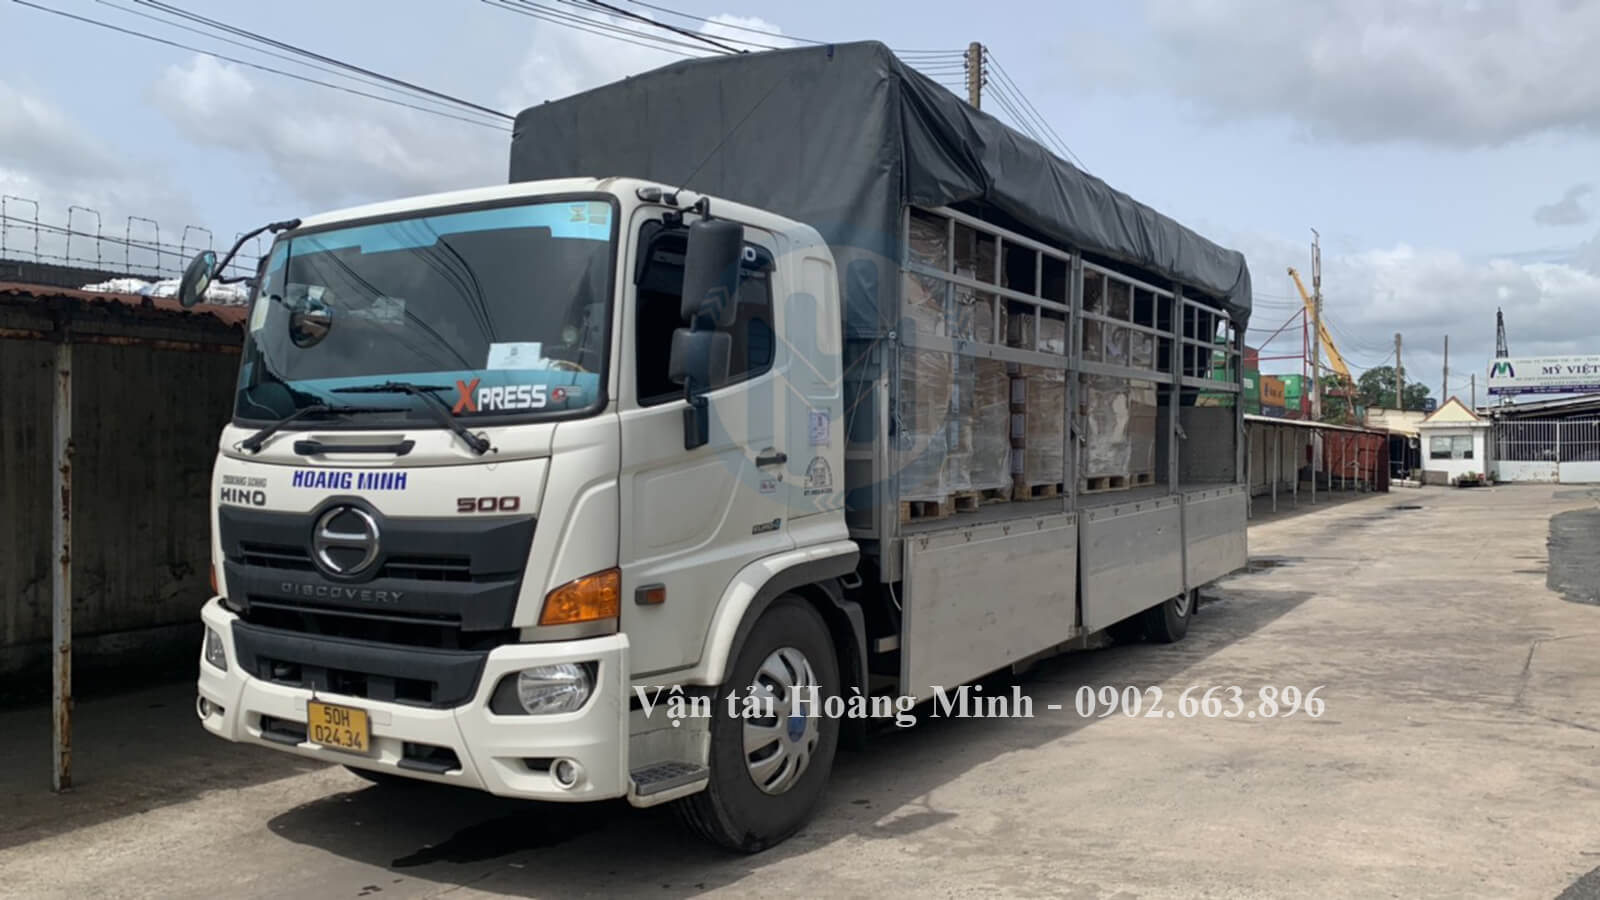 Liên hệ dịch vụ cho thuê xe tải chở hàng KCN Phong Phú